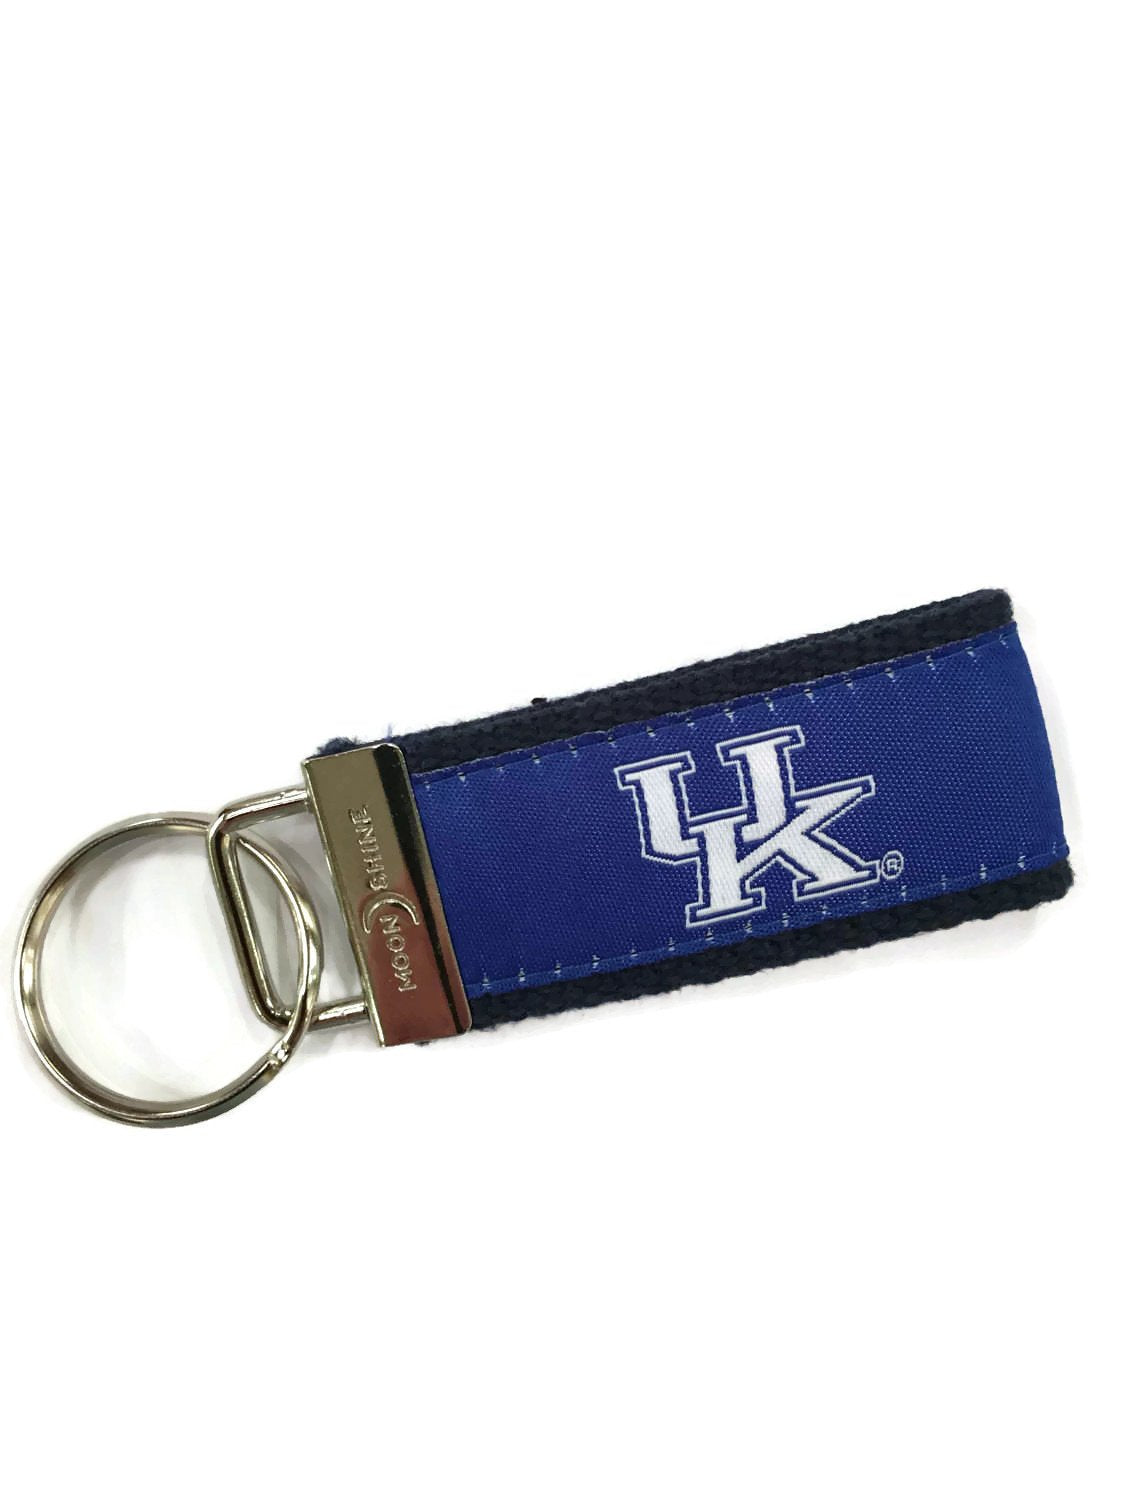 Kentucky University UK web key chains